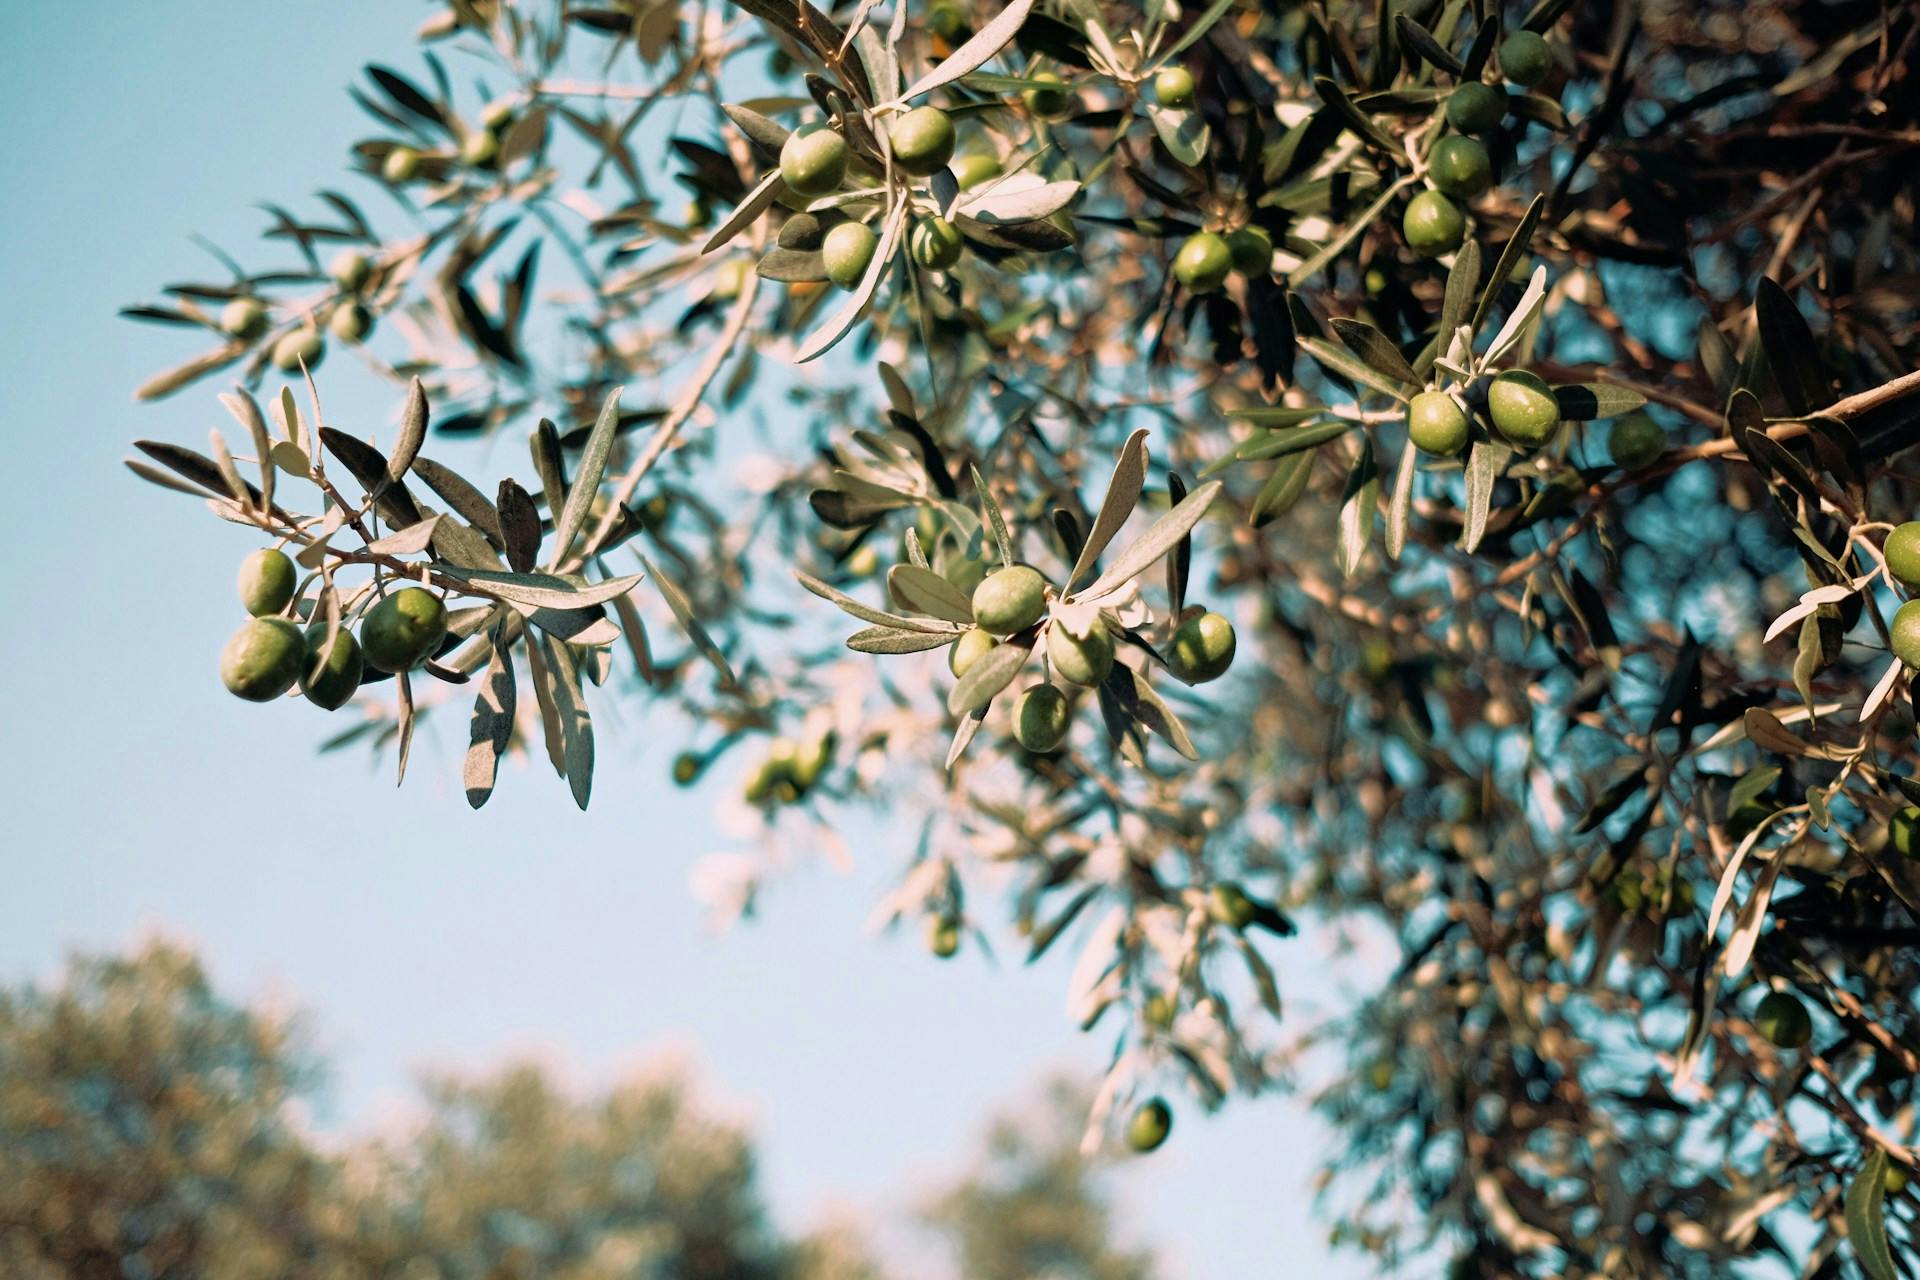 Plakias Olive Oil